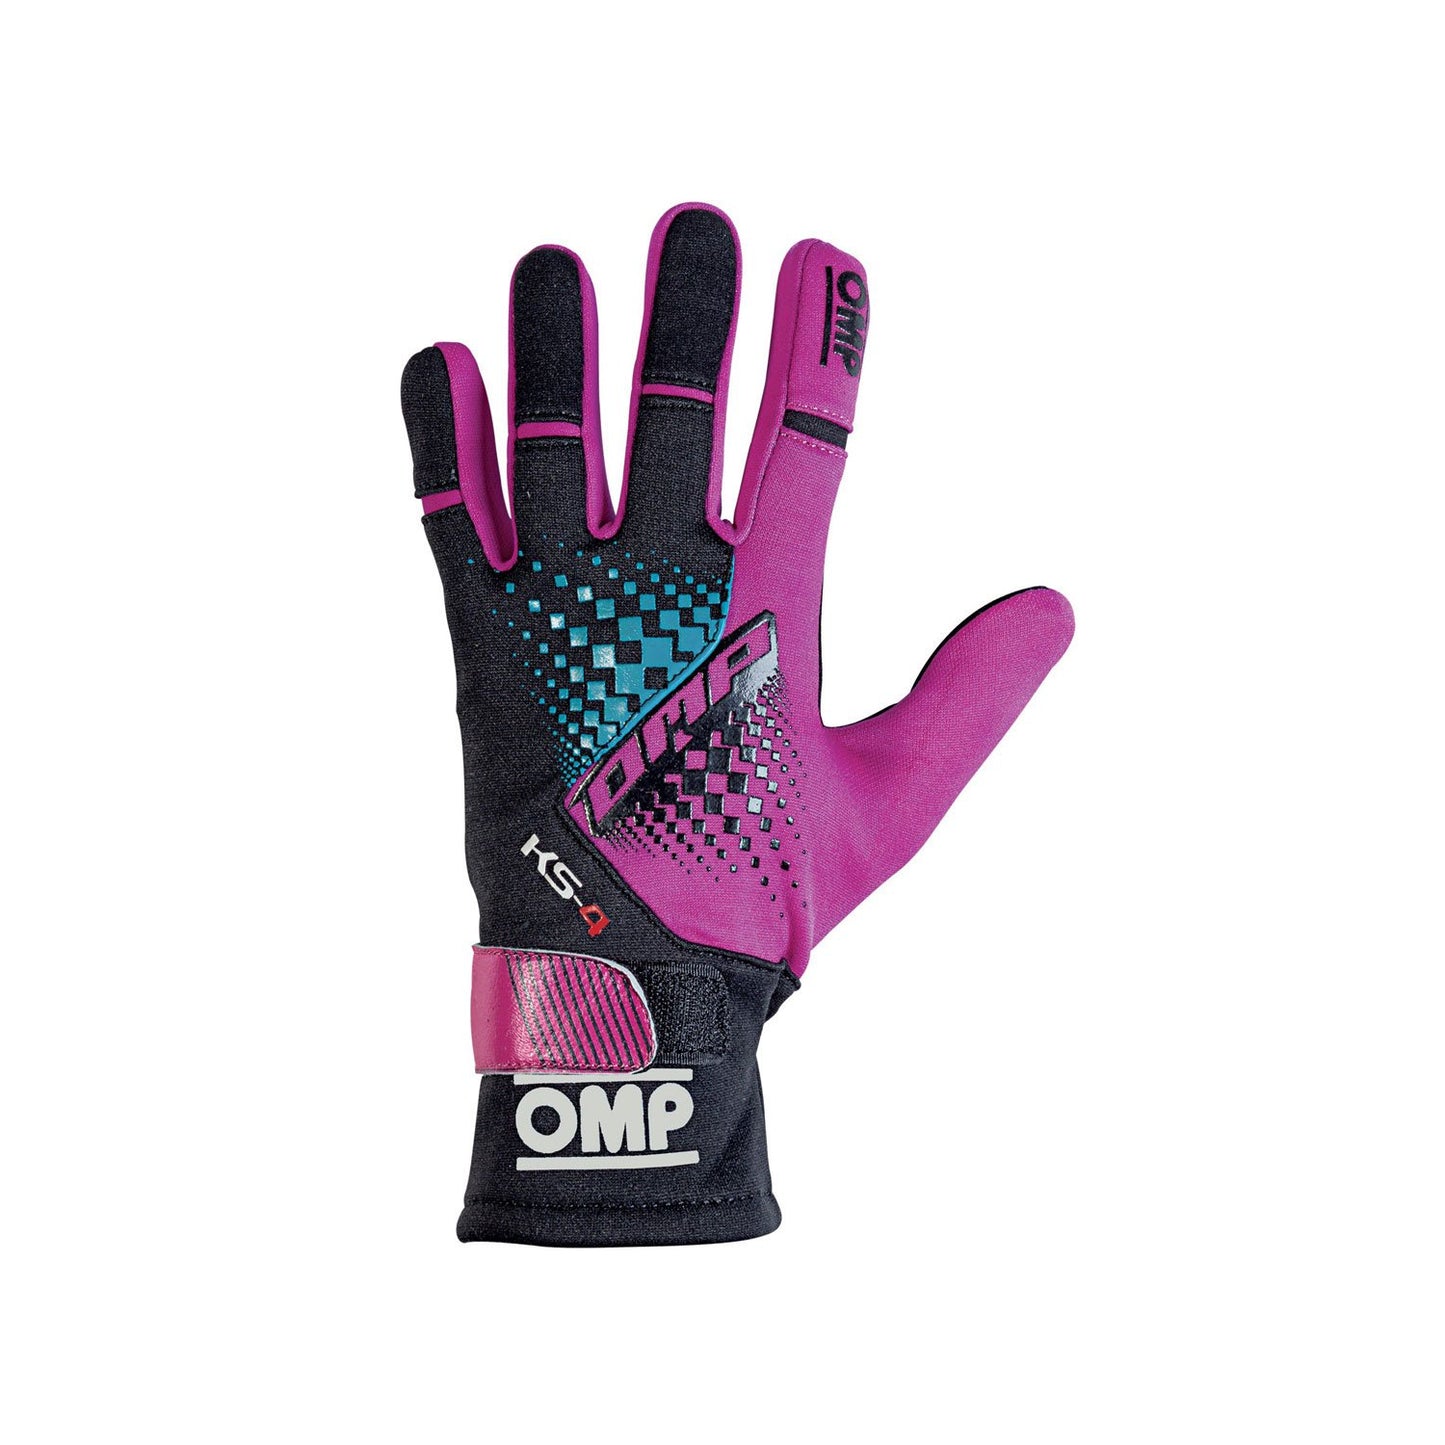 OMP KS-4 MY18 Karting Gloves